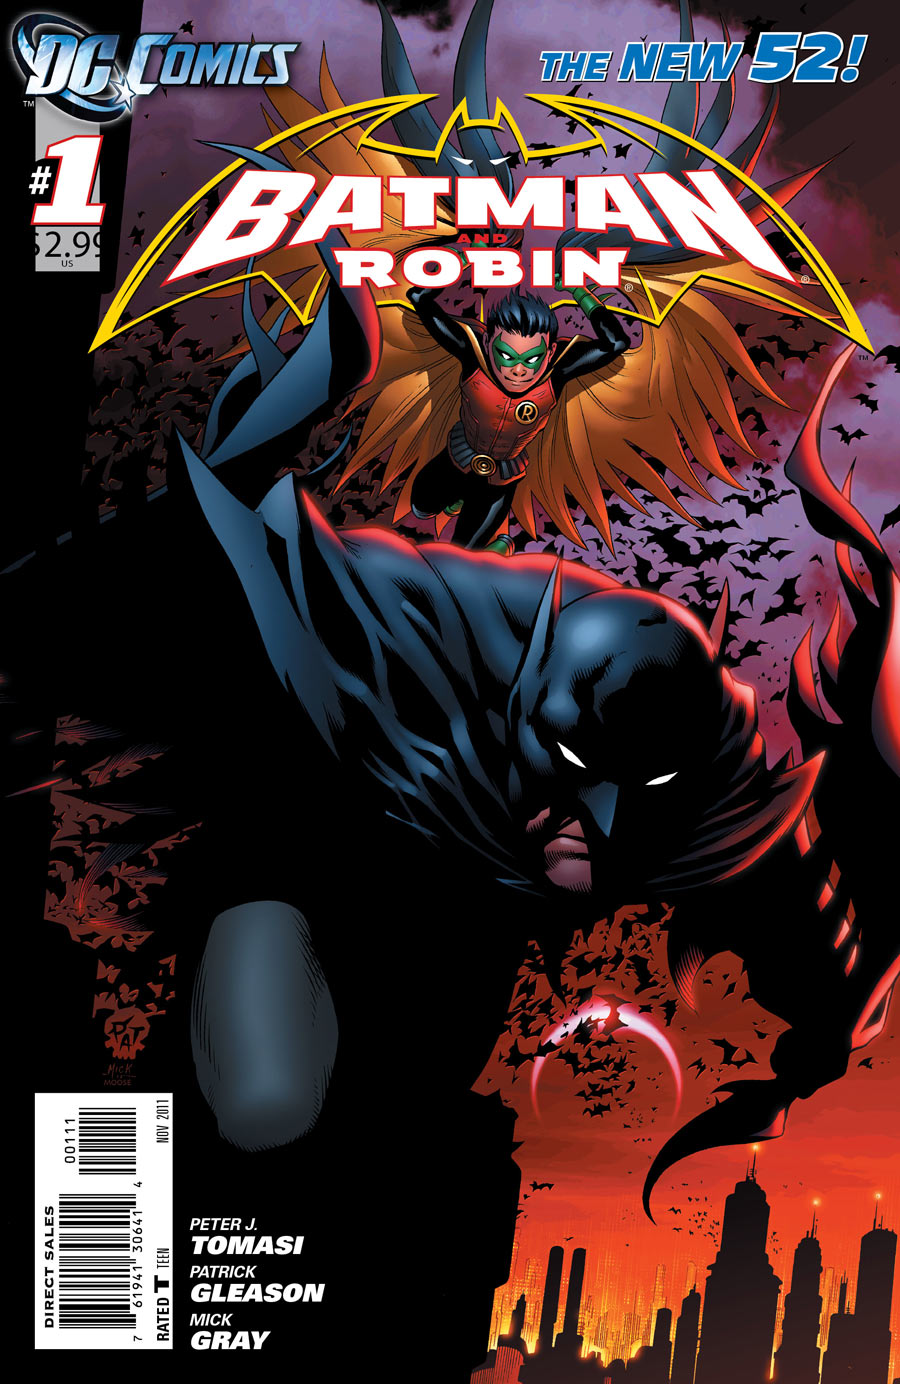 Batman and Robin Vol. 2 #1